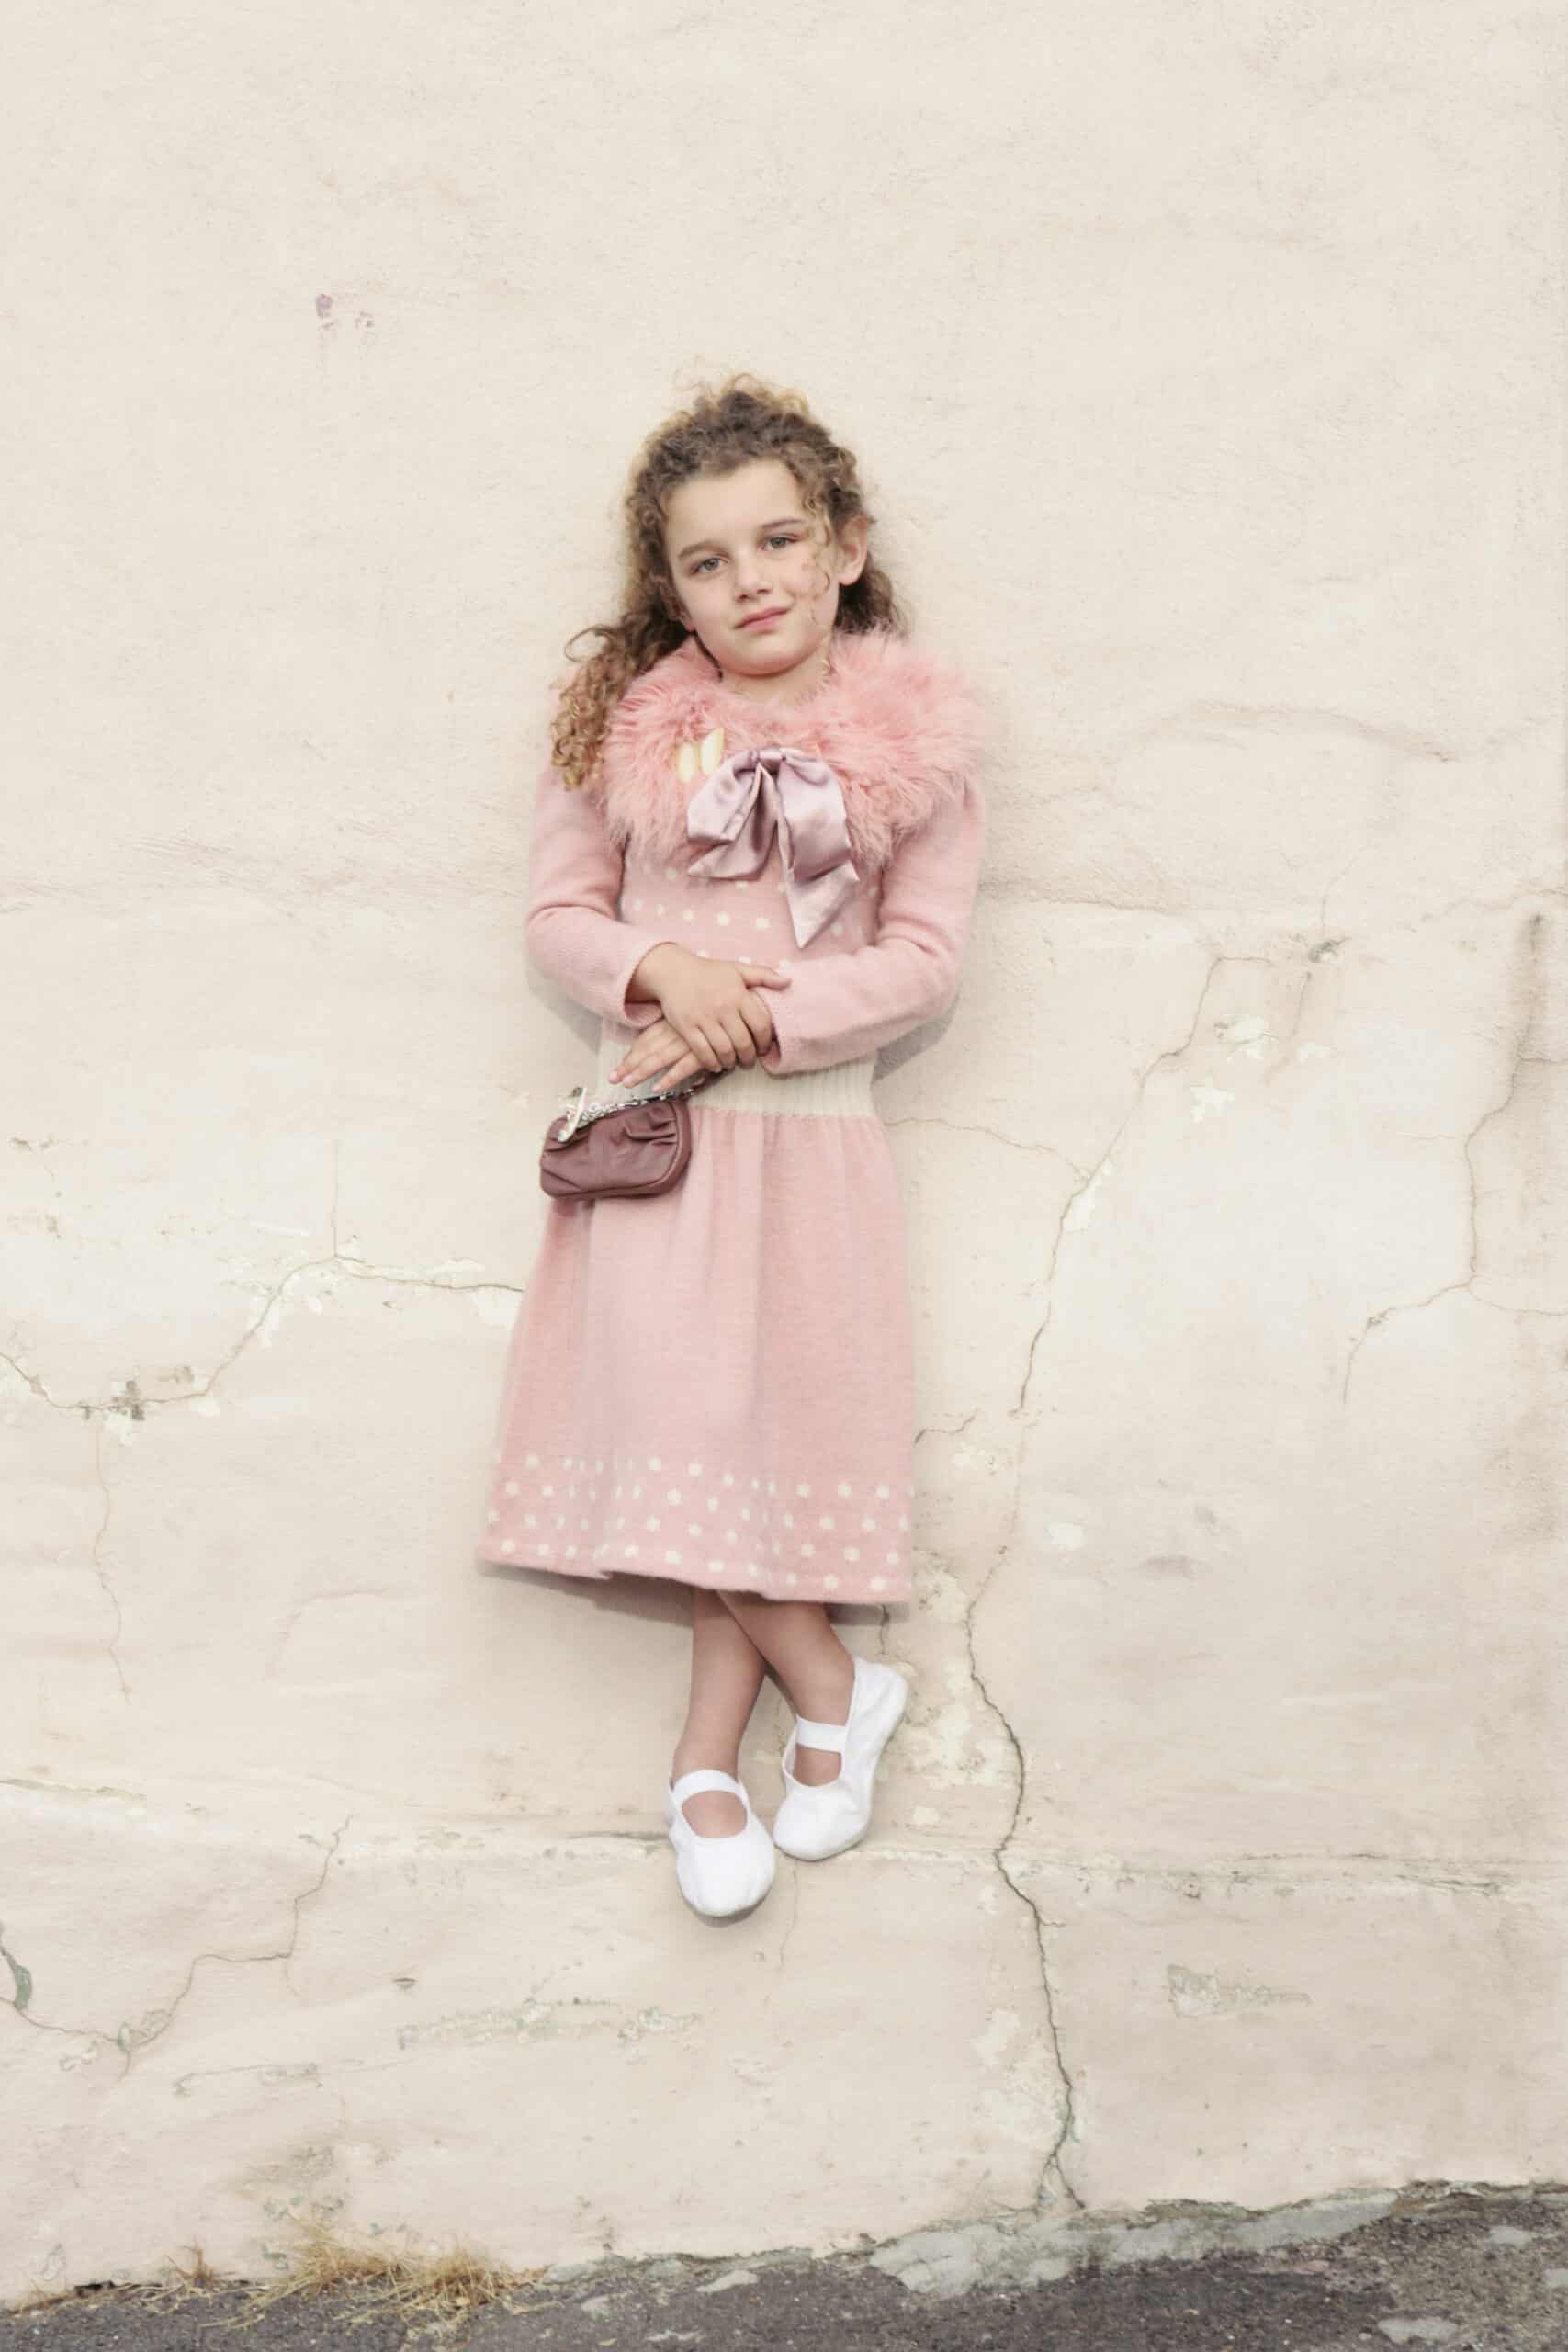 Ein junges Mädchen mit lockigem Haar steht vor einer rissigen Wand. Sie trägt ein rosa Kleid mit Punkten, eine flauschige rosa Jacke und weiße Schuhe. Sie hält eine kleine Handtasche und lächelt leicht. © Fotografie Tomas Rodriguez